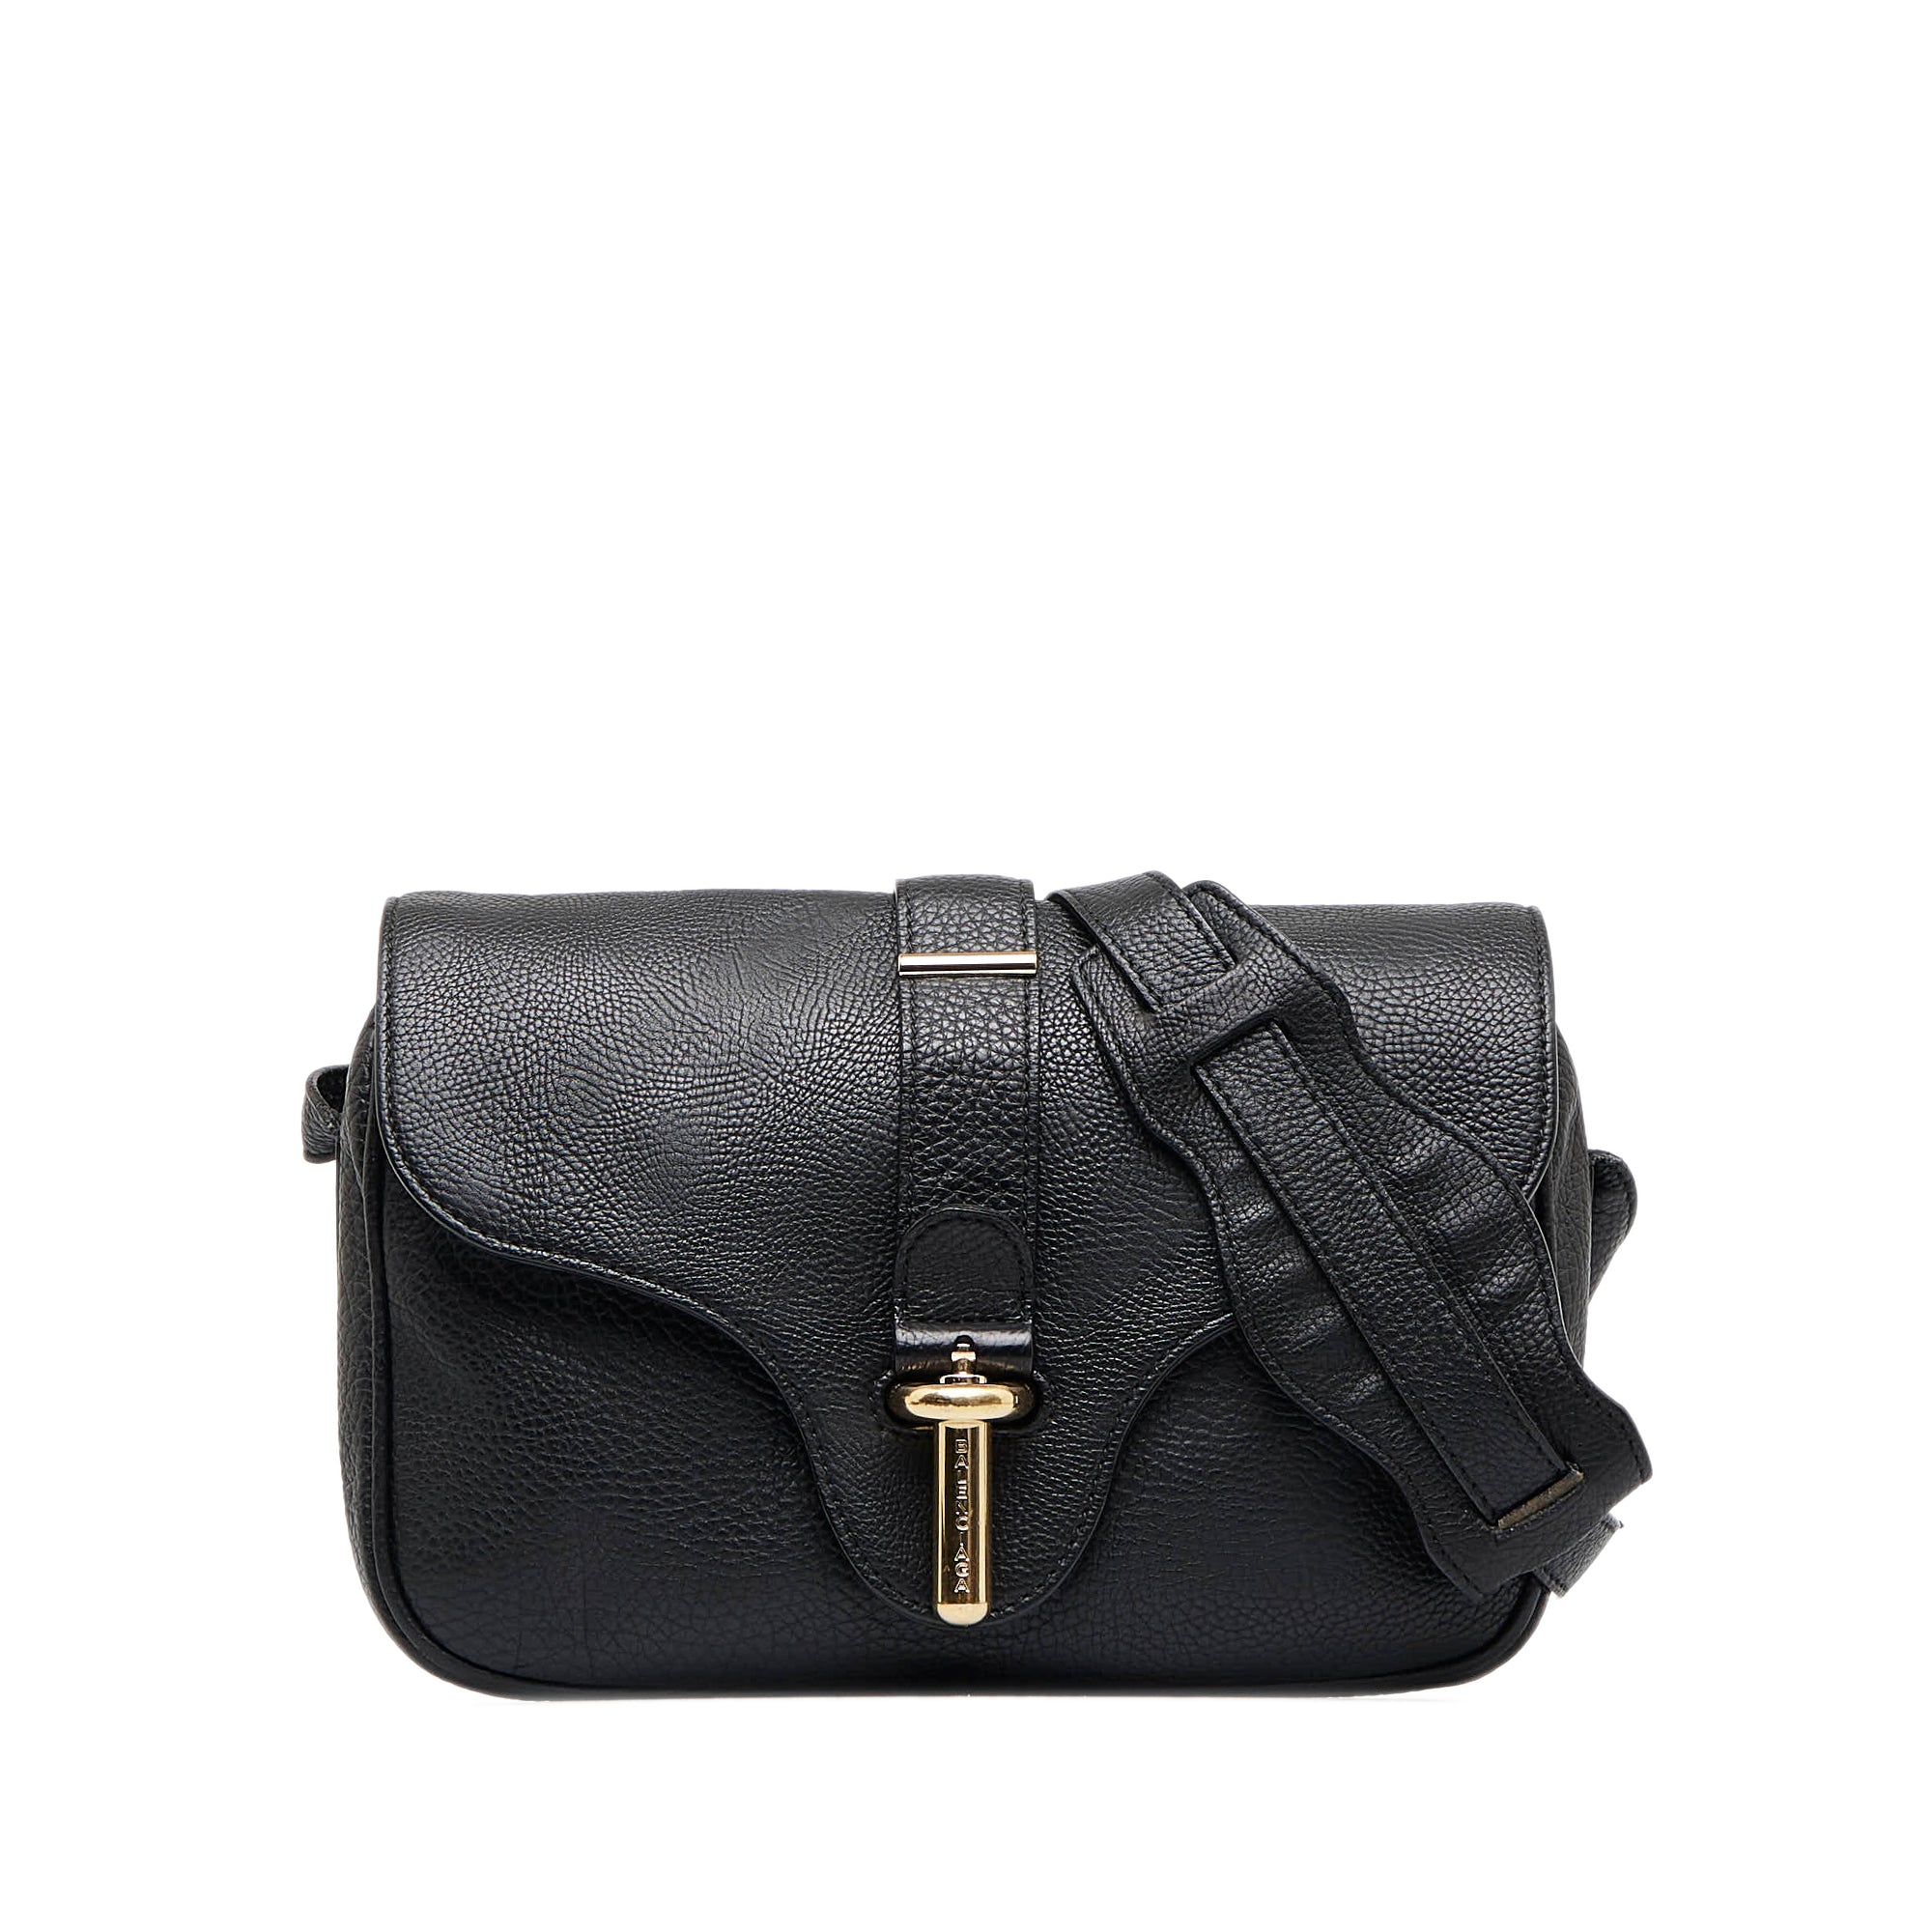 Balenciaga Crossbody Adjustable Strap Handbags & Bags for Women